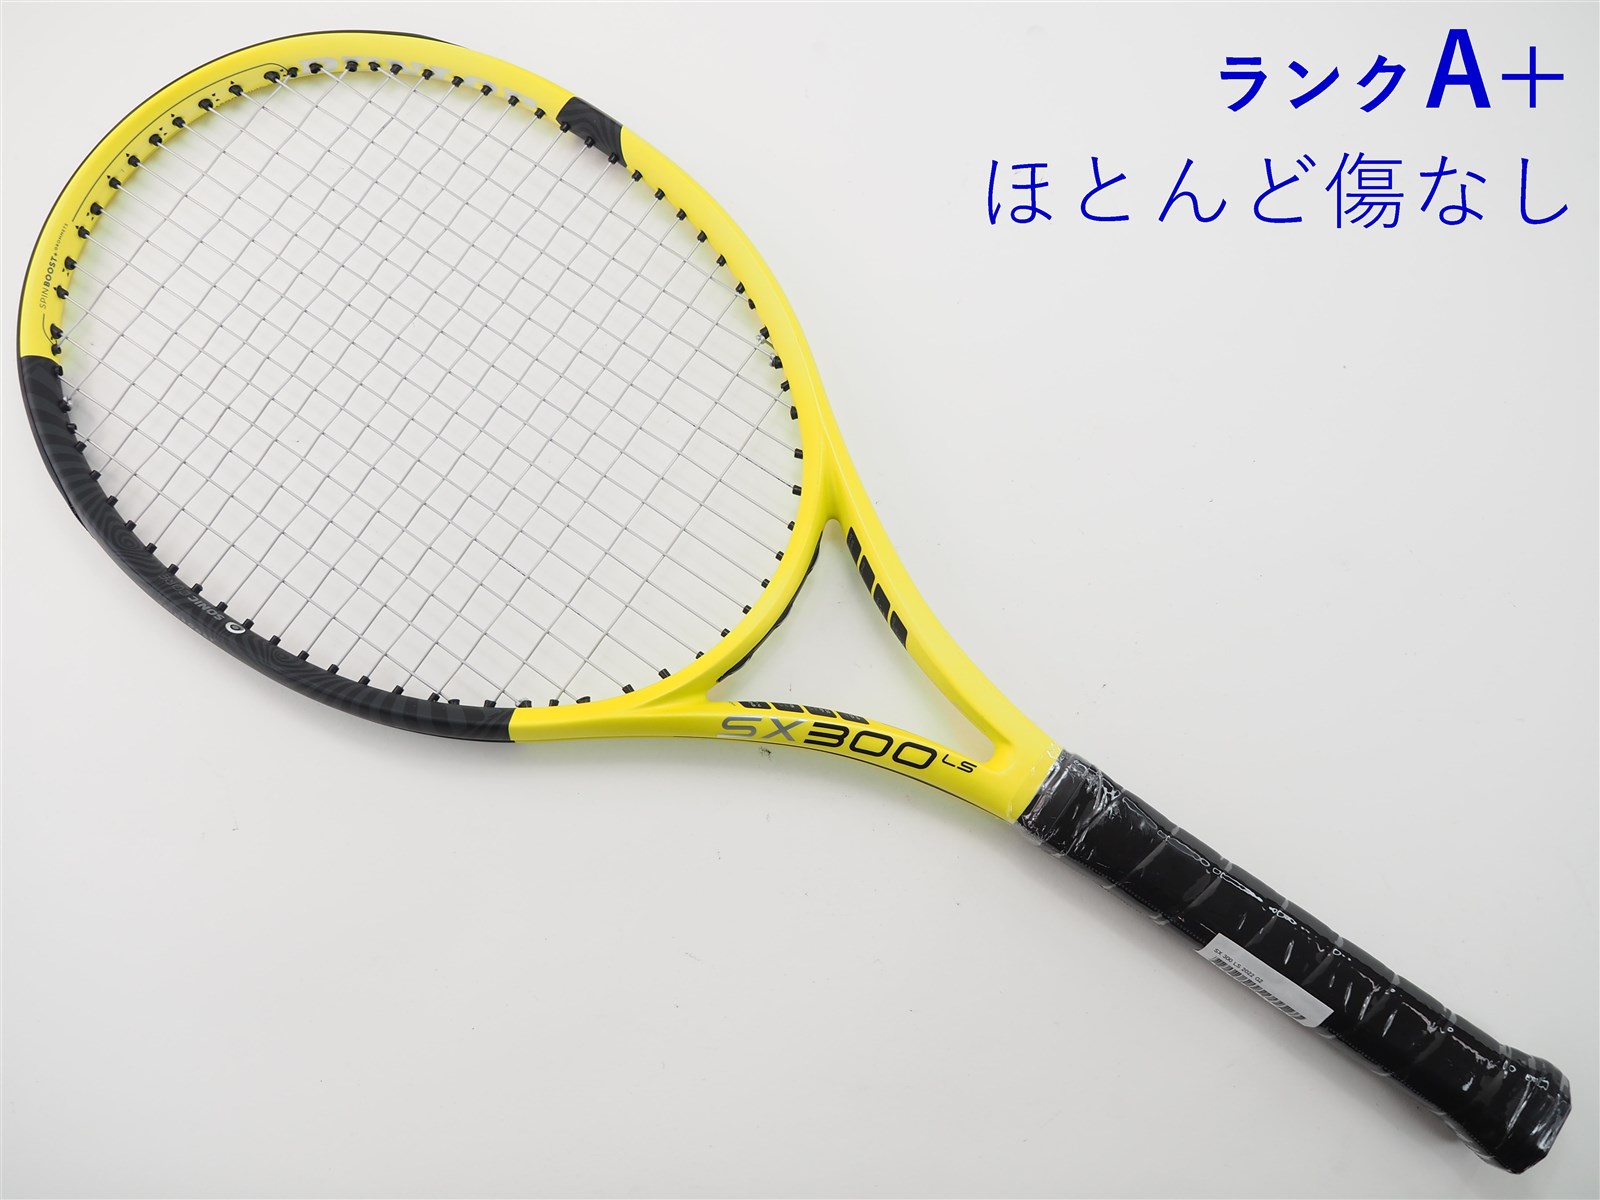 テニスラケット ダンロップ エスエックス300 エルエス 2019年モデル (G2)DUNLOP SX300 LS 2019